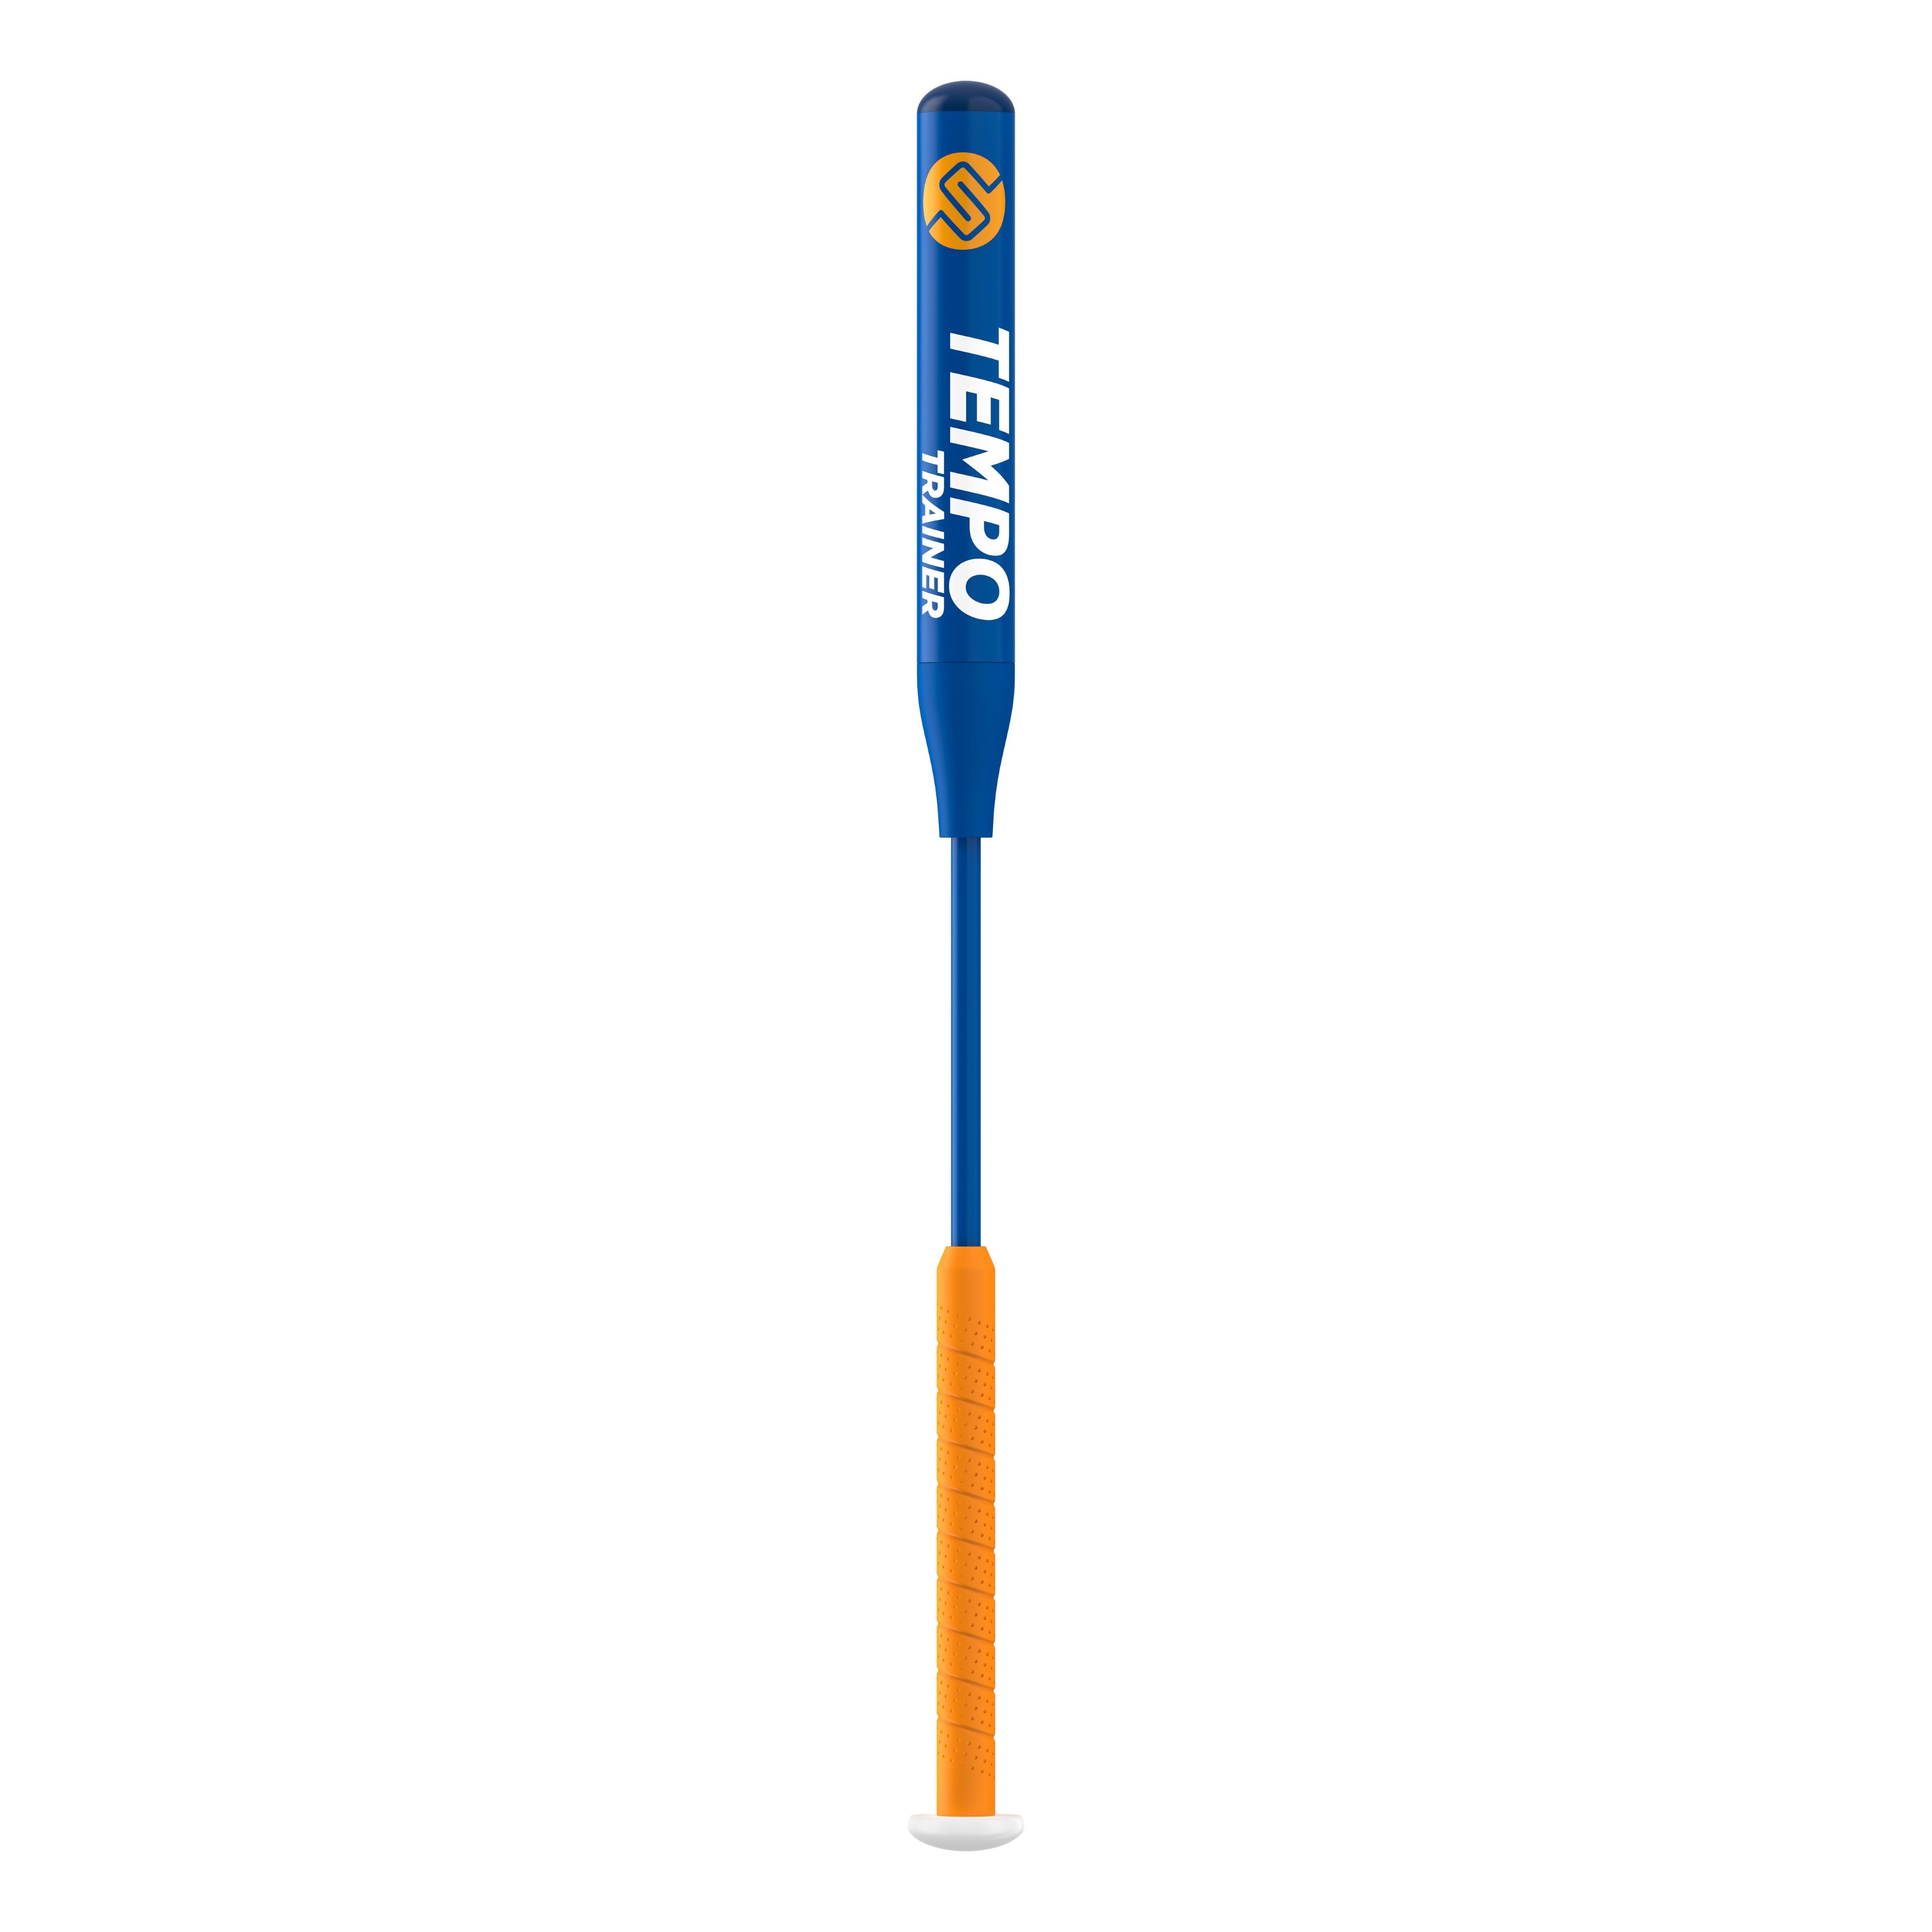 baseball training bat orange and blue with white text